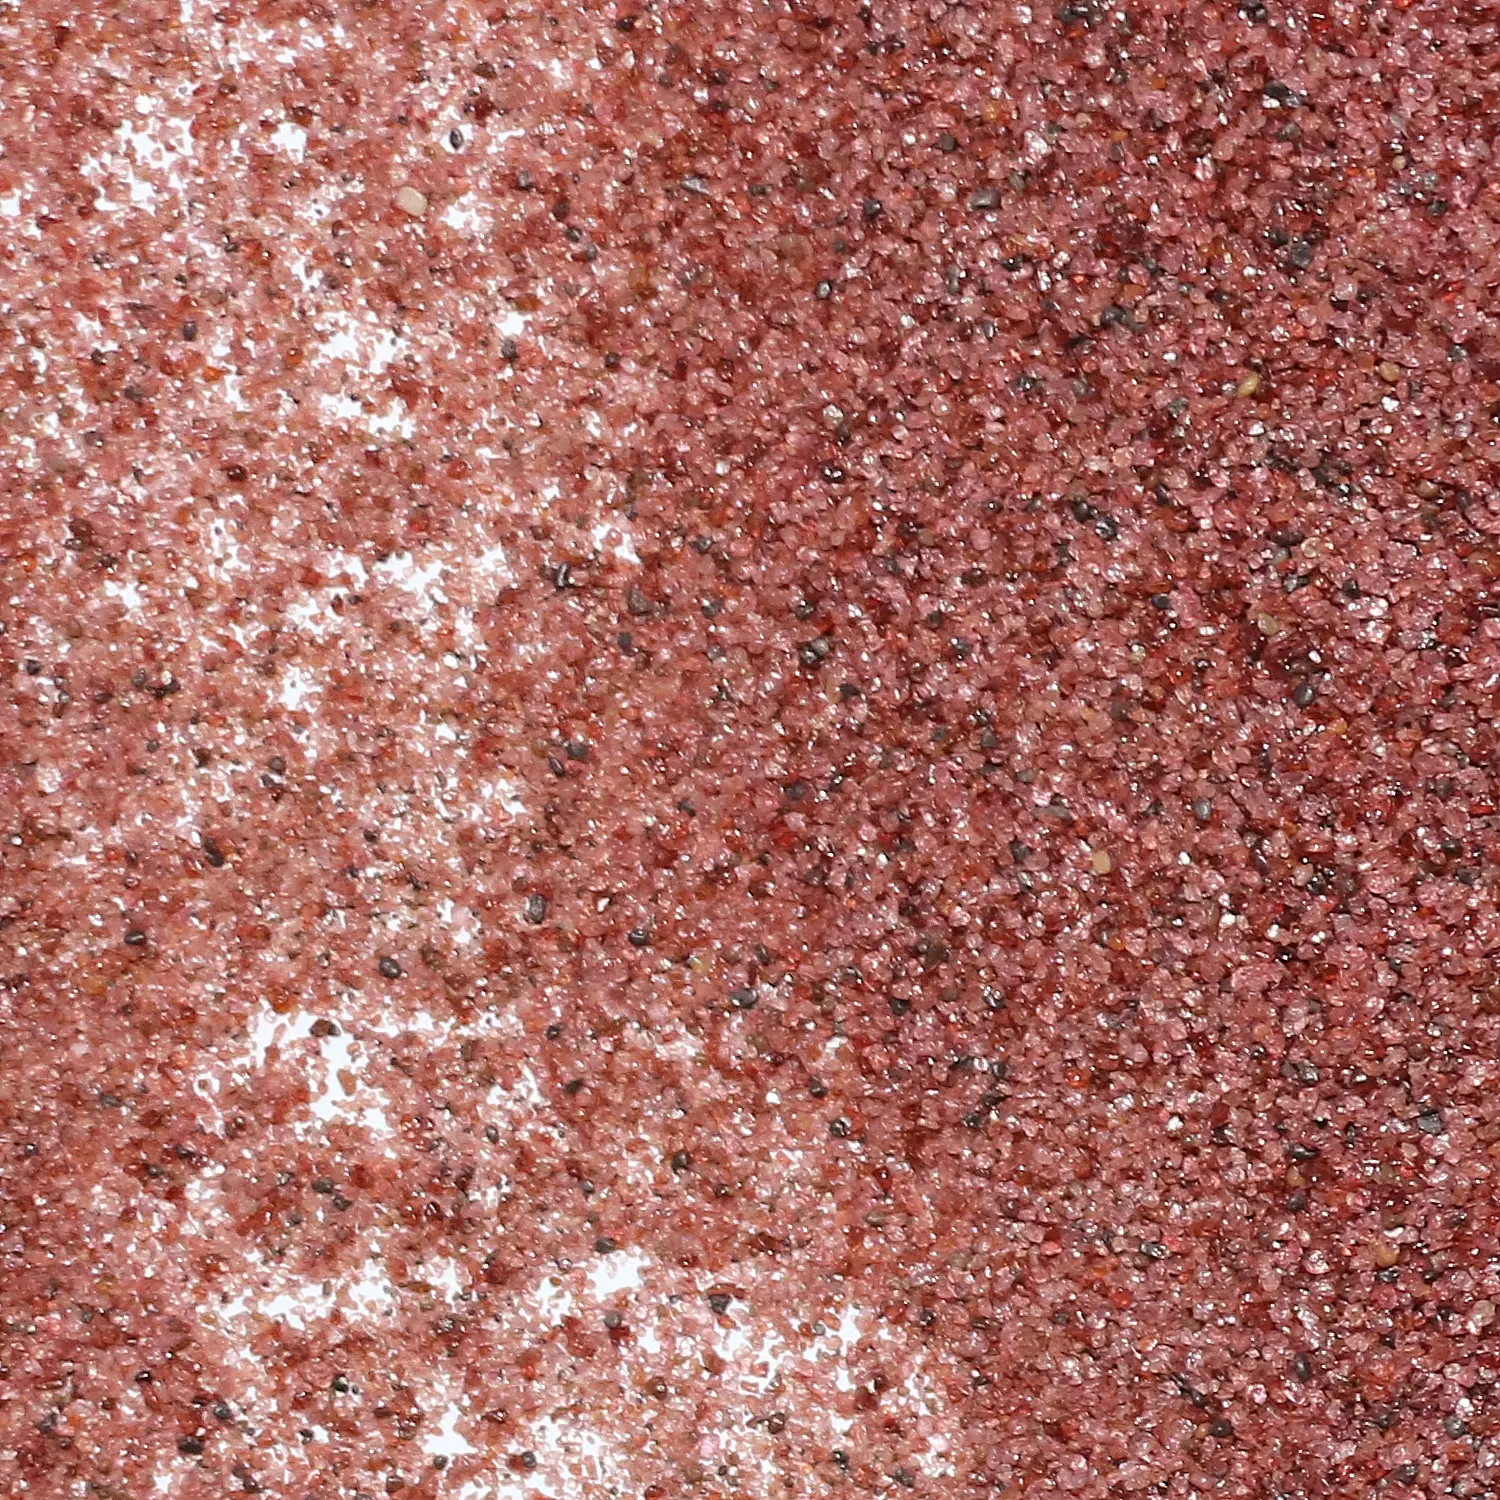 Contoh gratis 3060 #80 # bahan pemotong bebas debu bersih pasir laut merah muda pasir garnet pasir Afrika Selatan